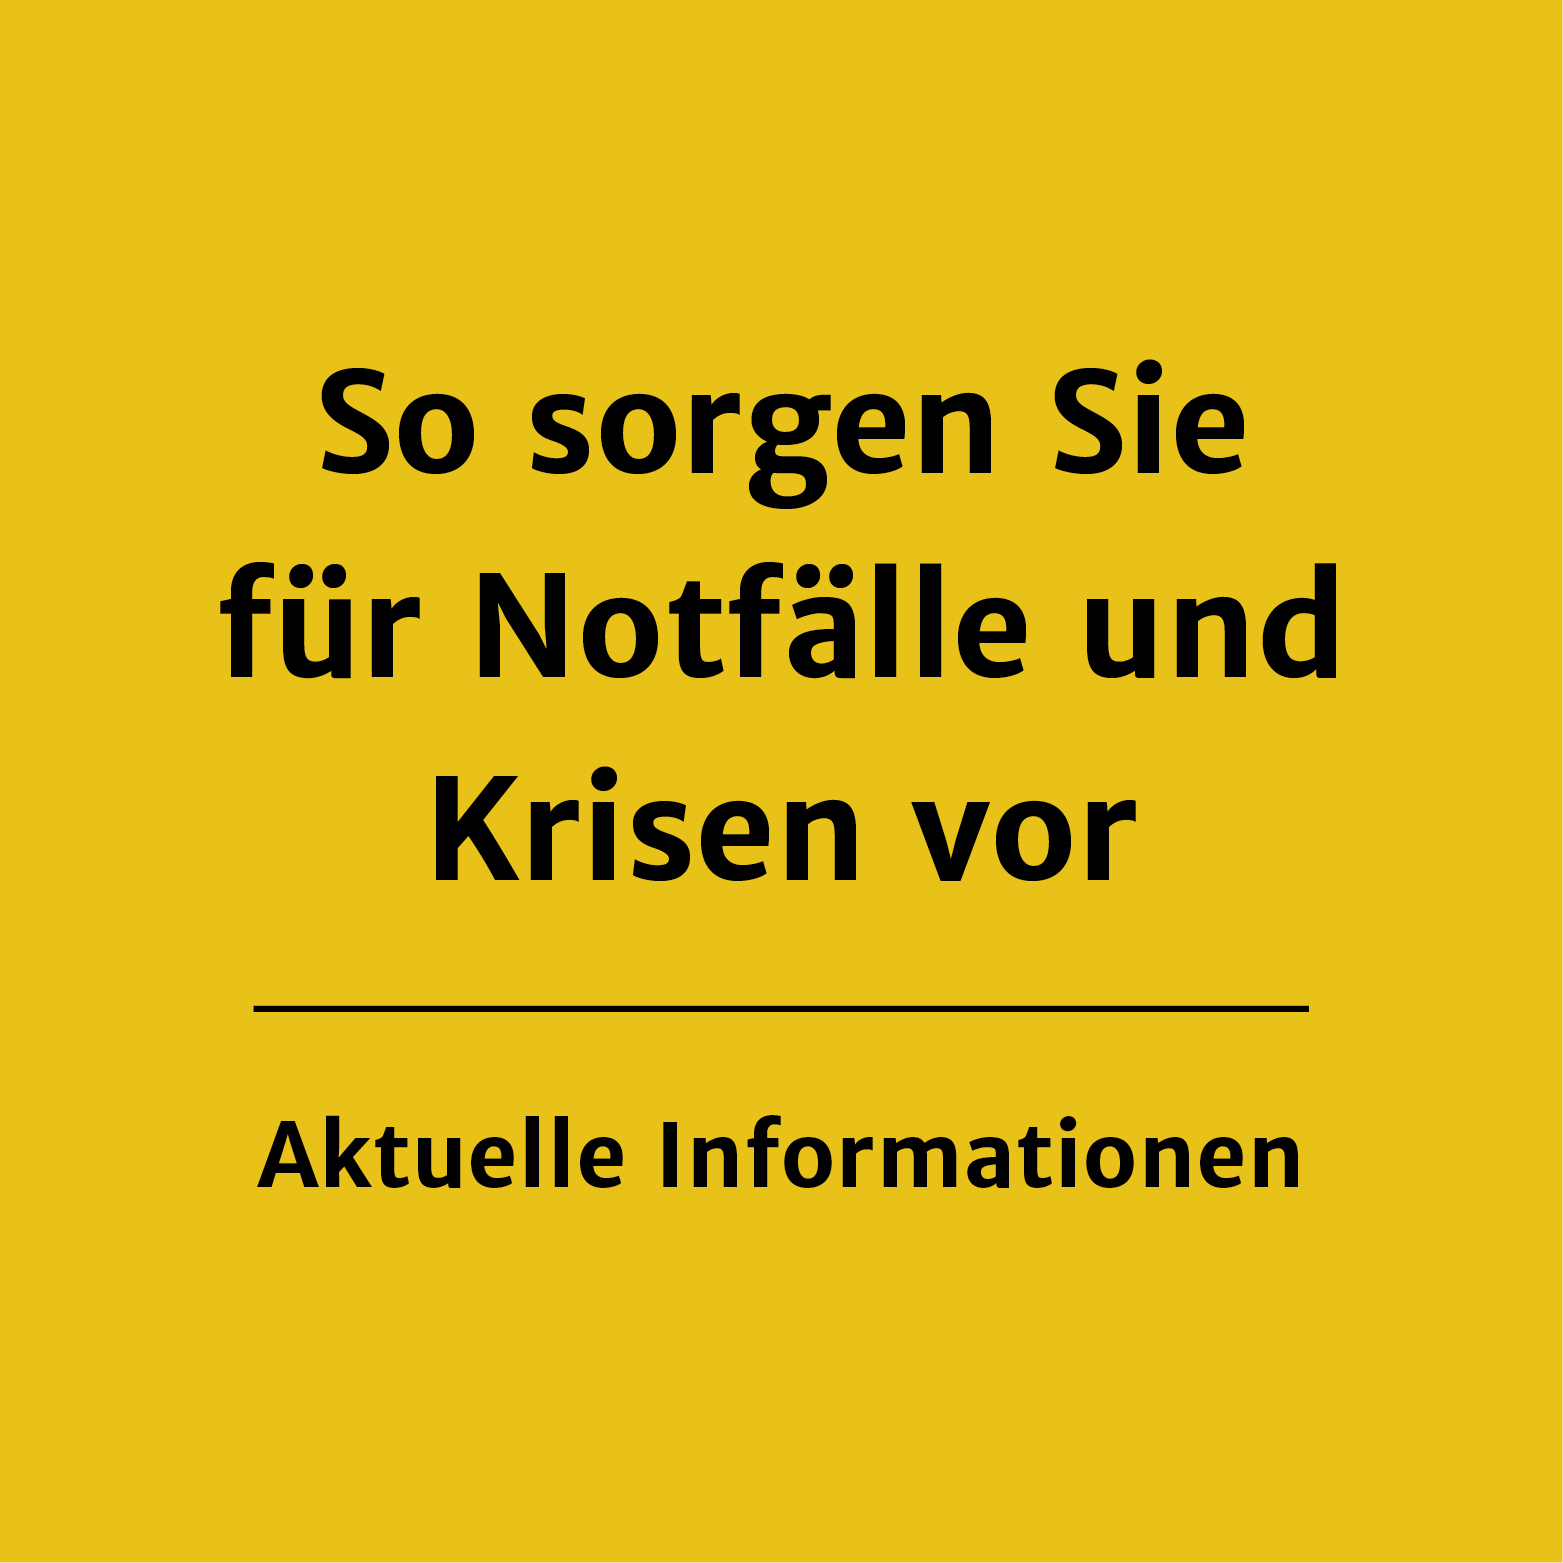 Link zur Webseite der Stadt Stuttgart mit Informationenund Hinweise zur Corona-Pandemie 